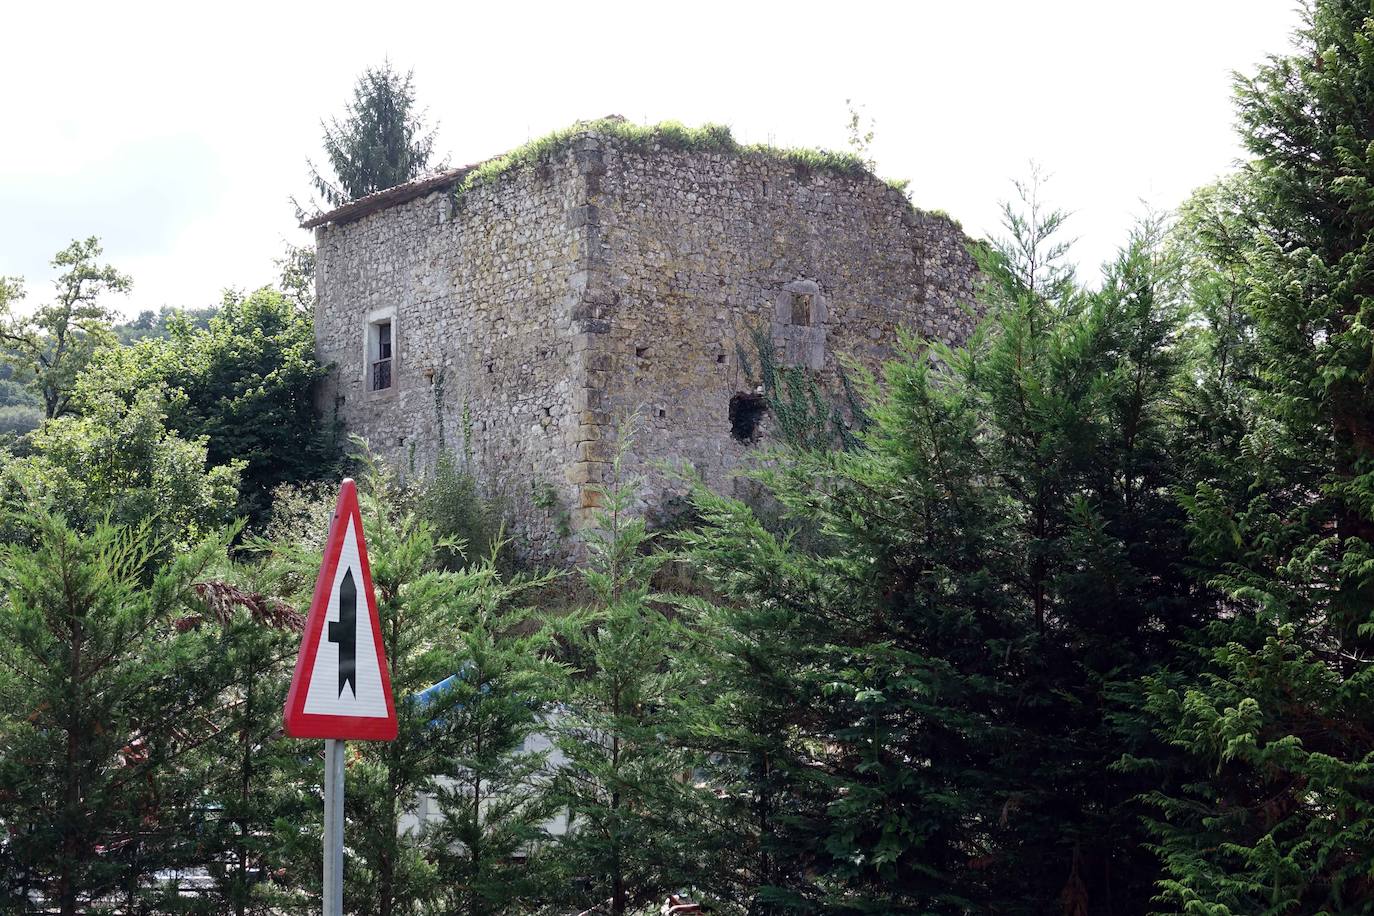 Torre de la Jura o del Heredero. Torre bajomedieval construida sobre una elevación que domina el llamado Campo de la Jura o de las Varas en Soto de Cangas. En ruina. La techumbre está hundida.